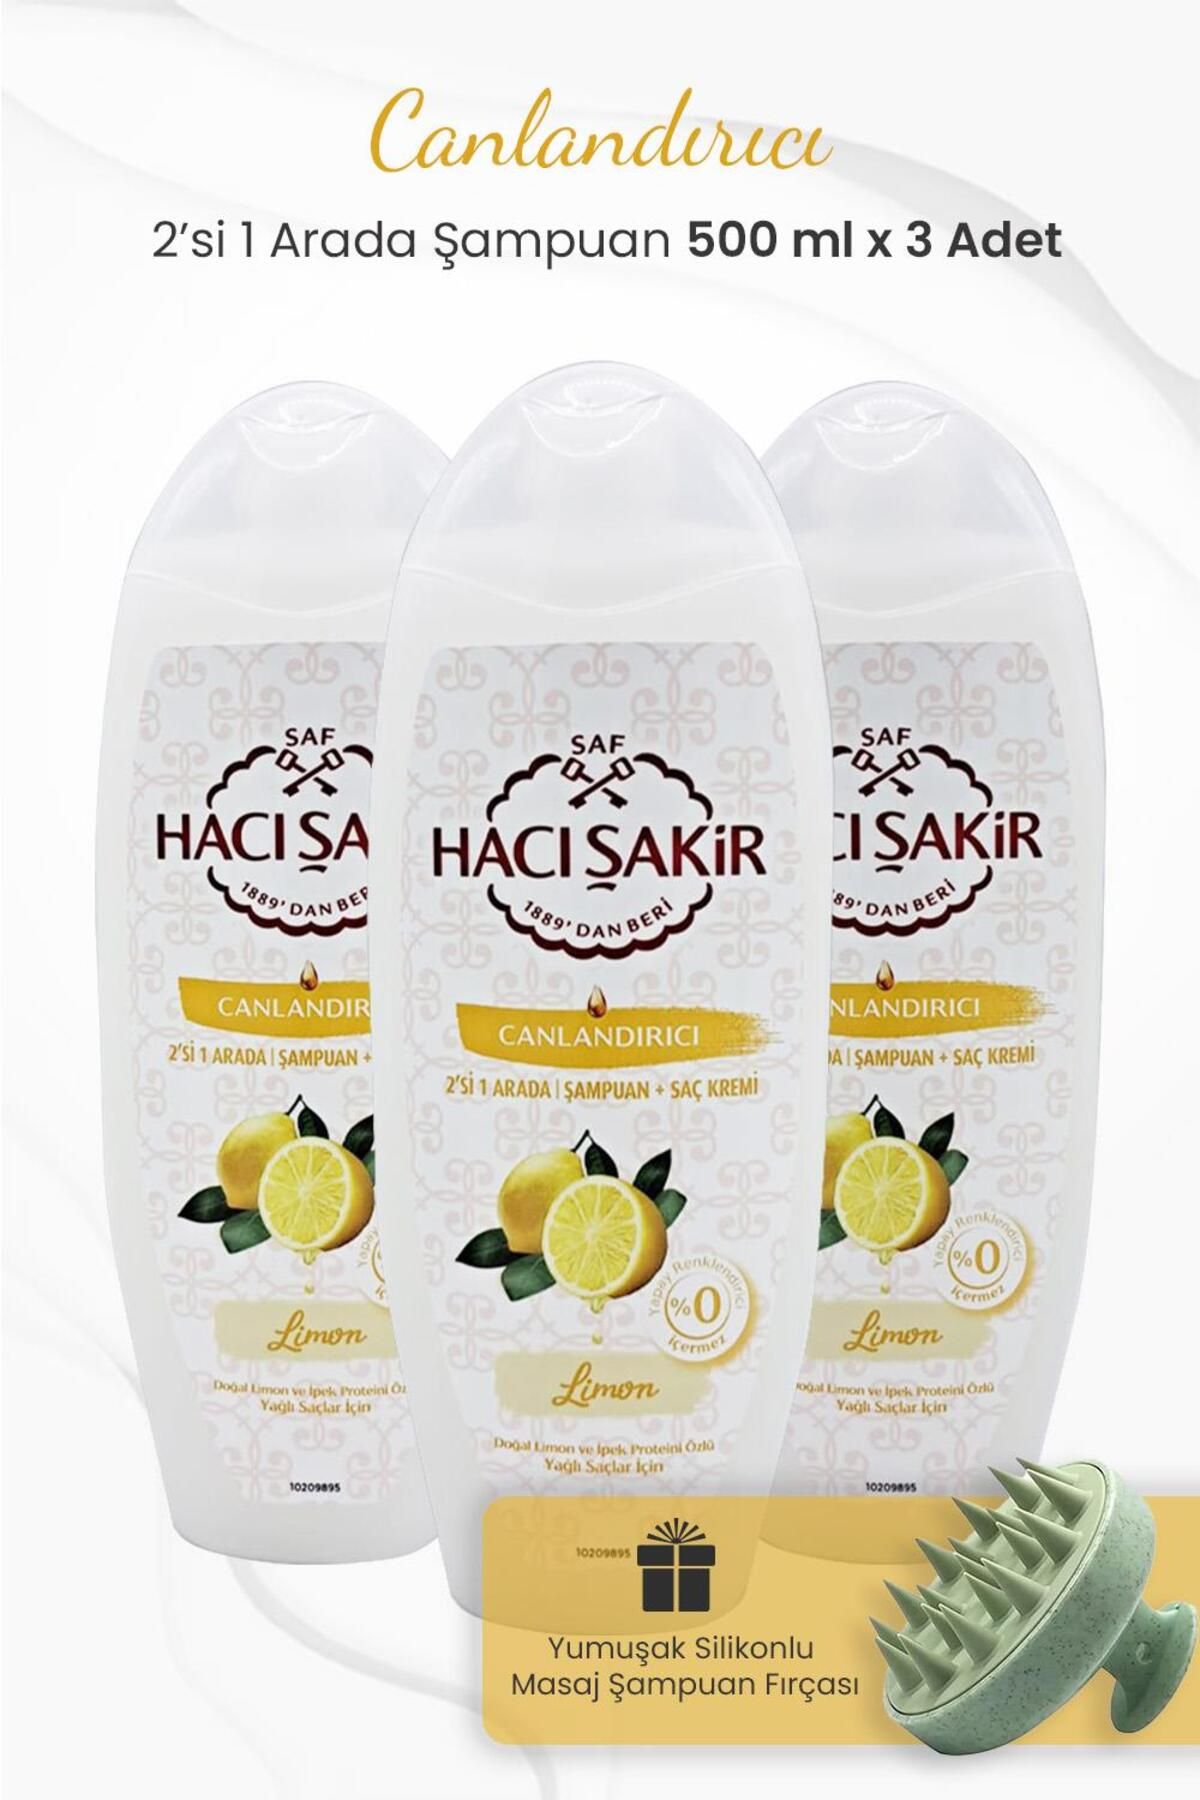 Hacı Şakir Limon 2si 1 Arada Şampuan 500 ml x 3 Adet ve Şampuan Fırçası Yeşil